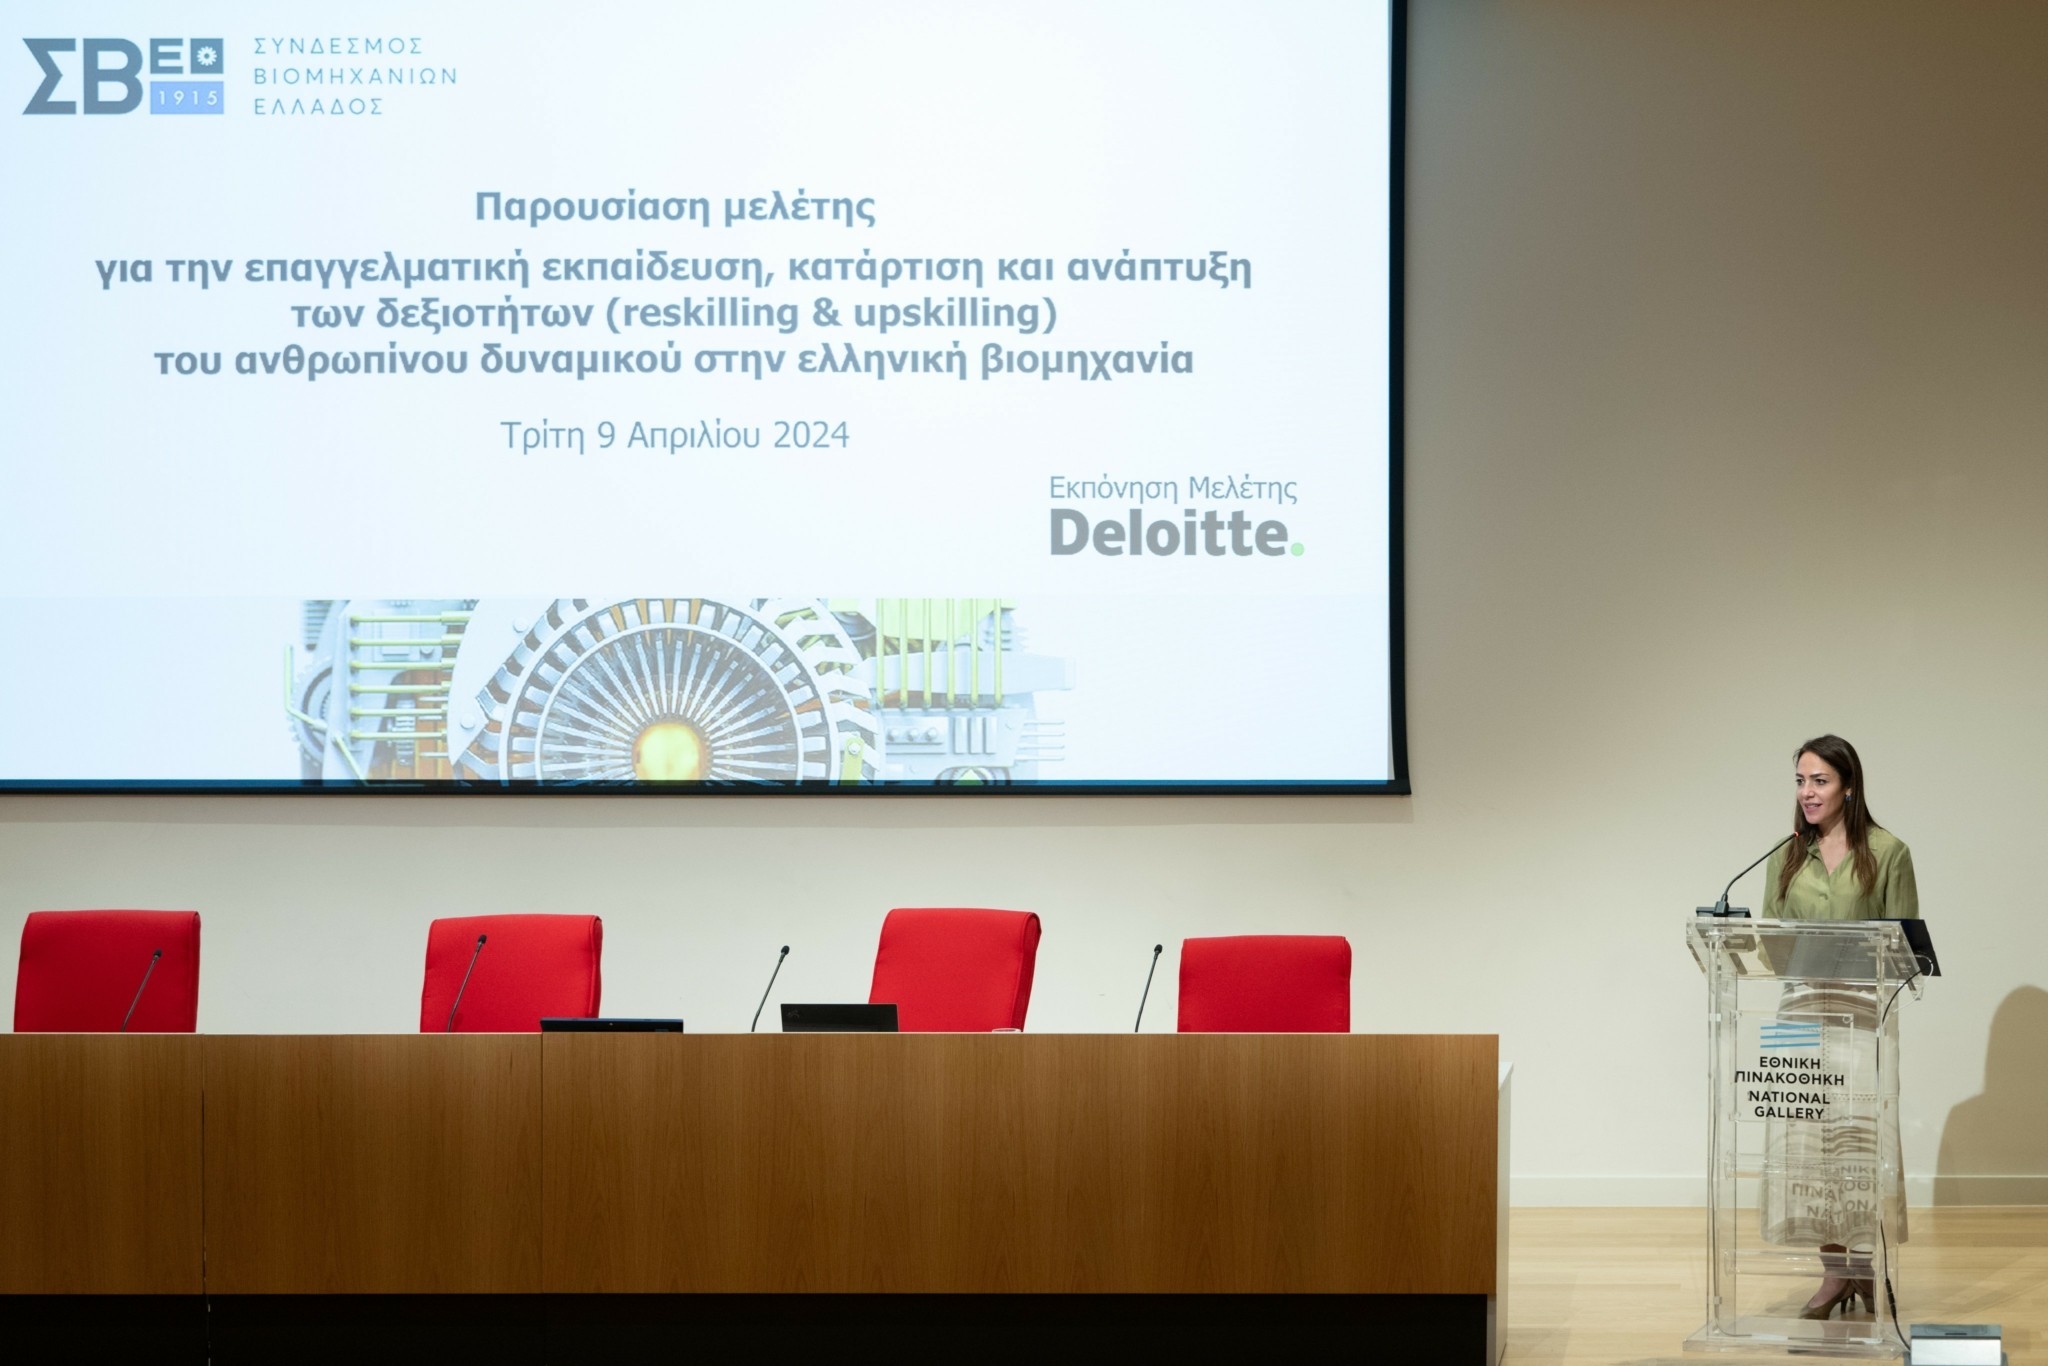 ΣΒΕ – Deloitte: Μελέτη για το ανθρώπινο δυναμικό στην ελληνική βιομηχανία